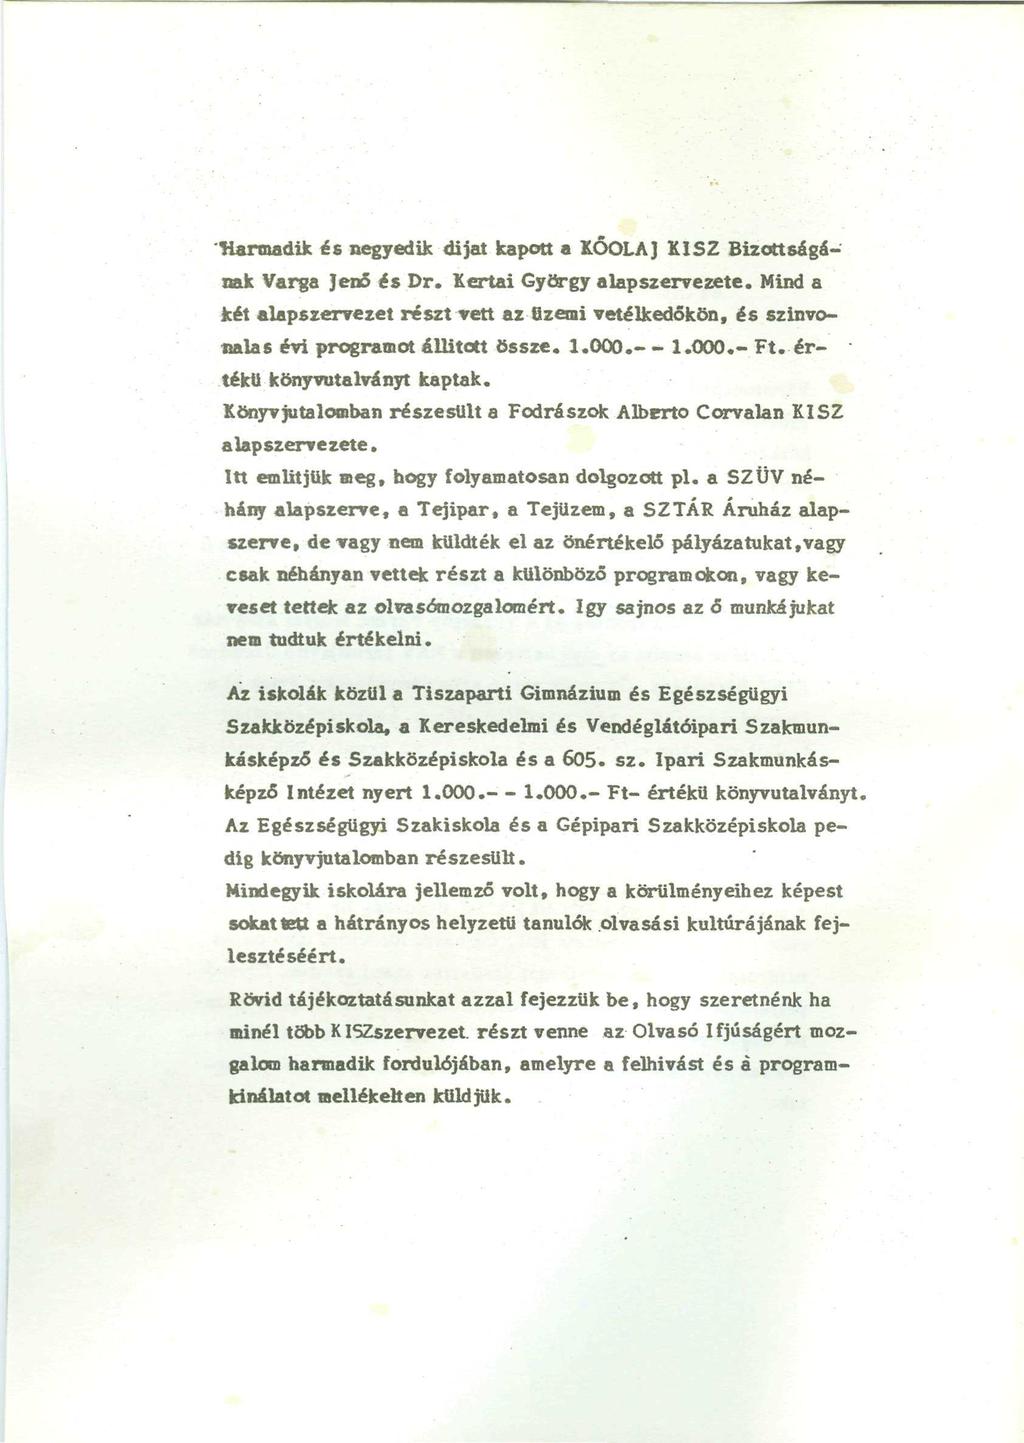 -Harmadik és negyedik dijat kapott a KŐOLAJ KISZ Bizottságának Varga Jenő és Dr. Kertai György alapszervezete.